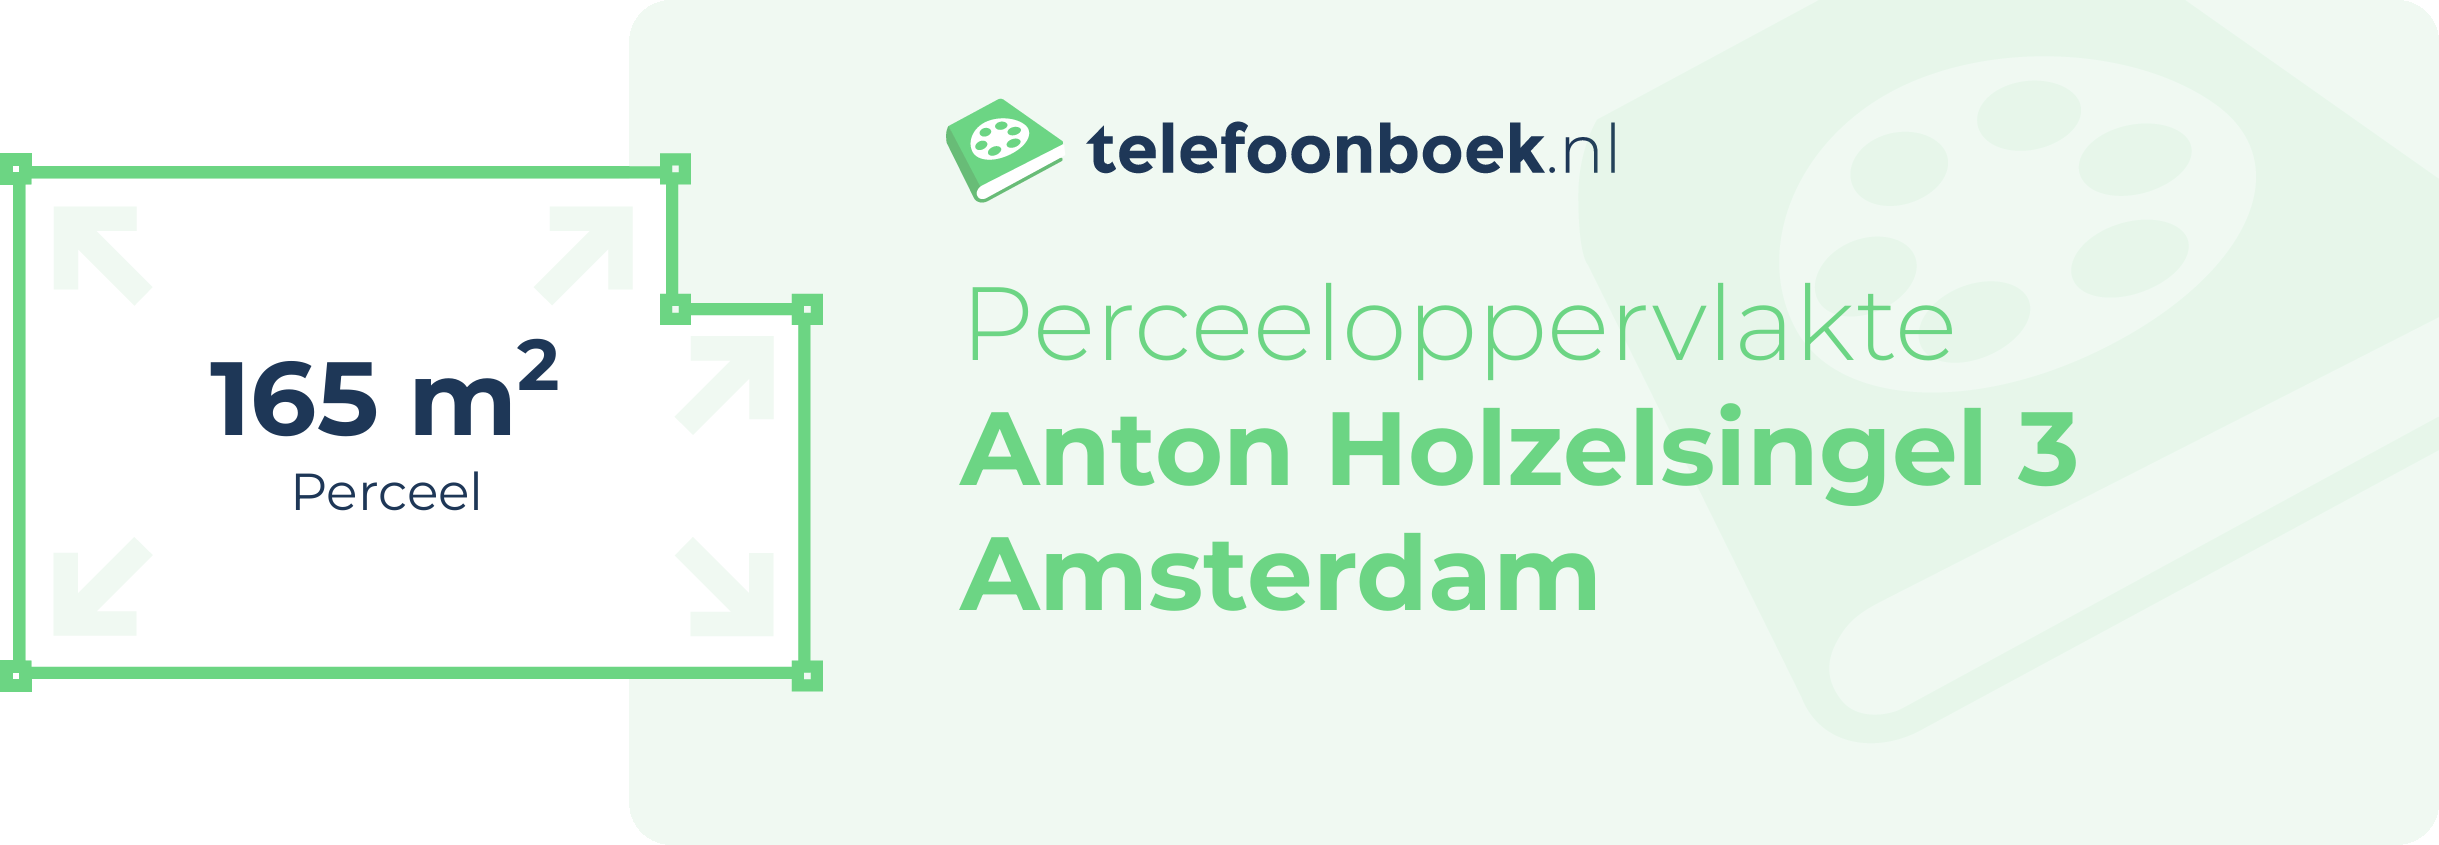 Perceeloppervlakte Anton Holzelsingel 3 Amsterdam